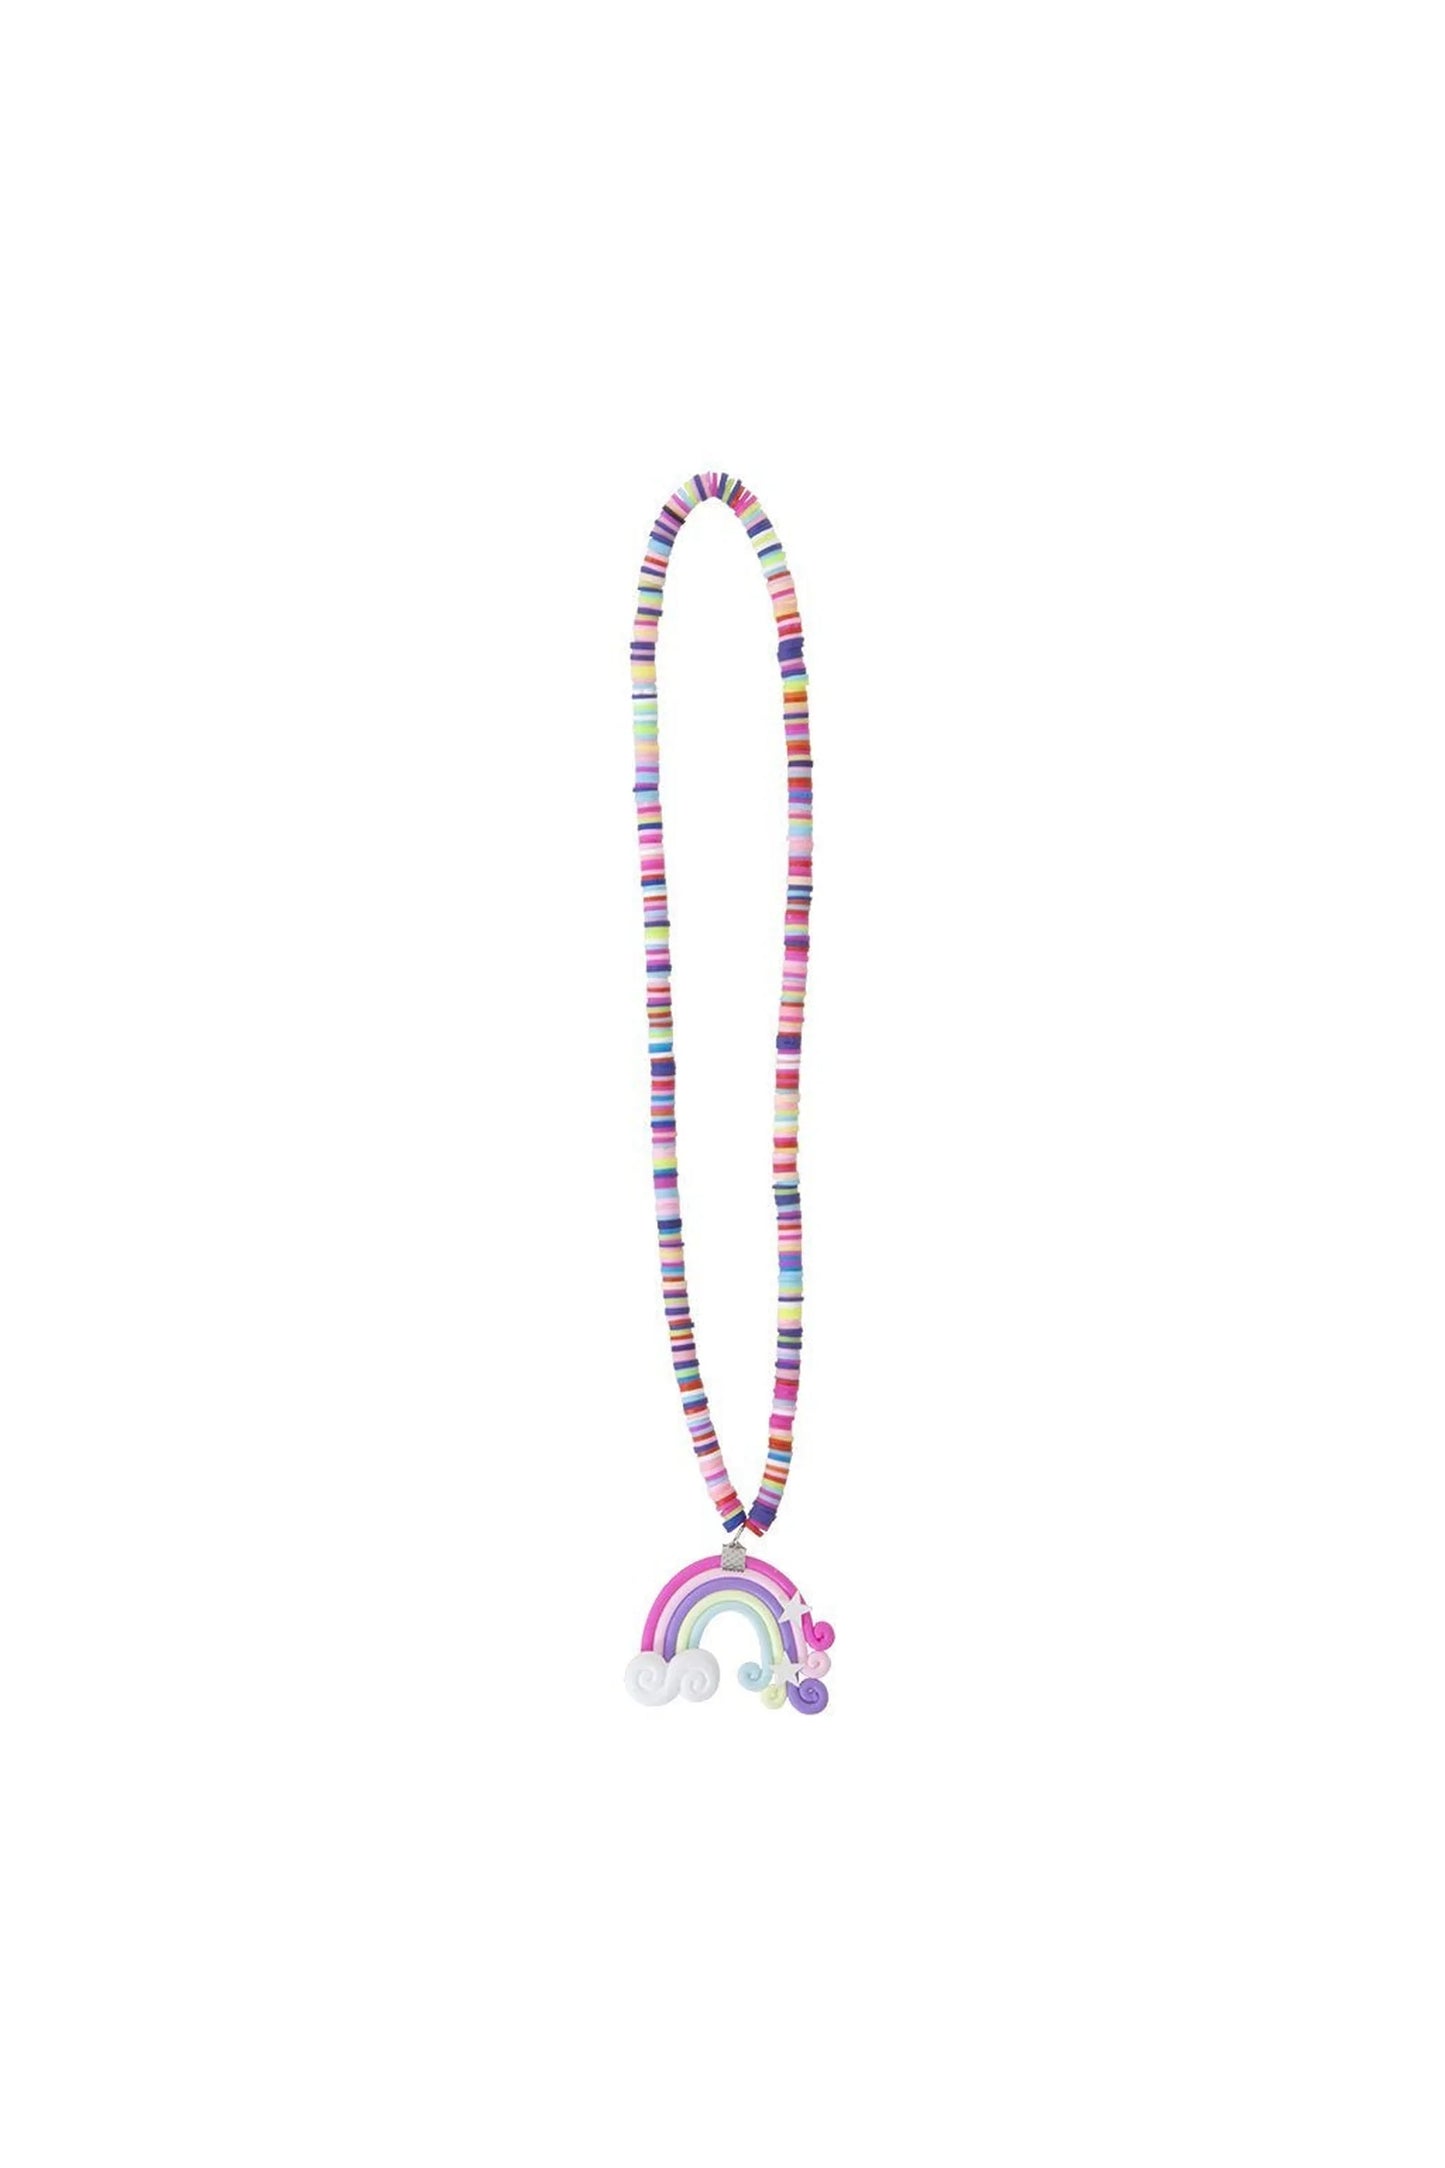 Great Pretenders Lollipop/Rainbow Necklace - Assortment